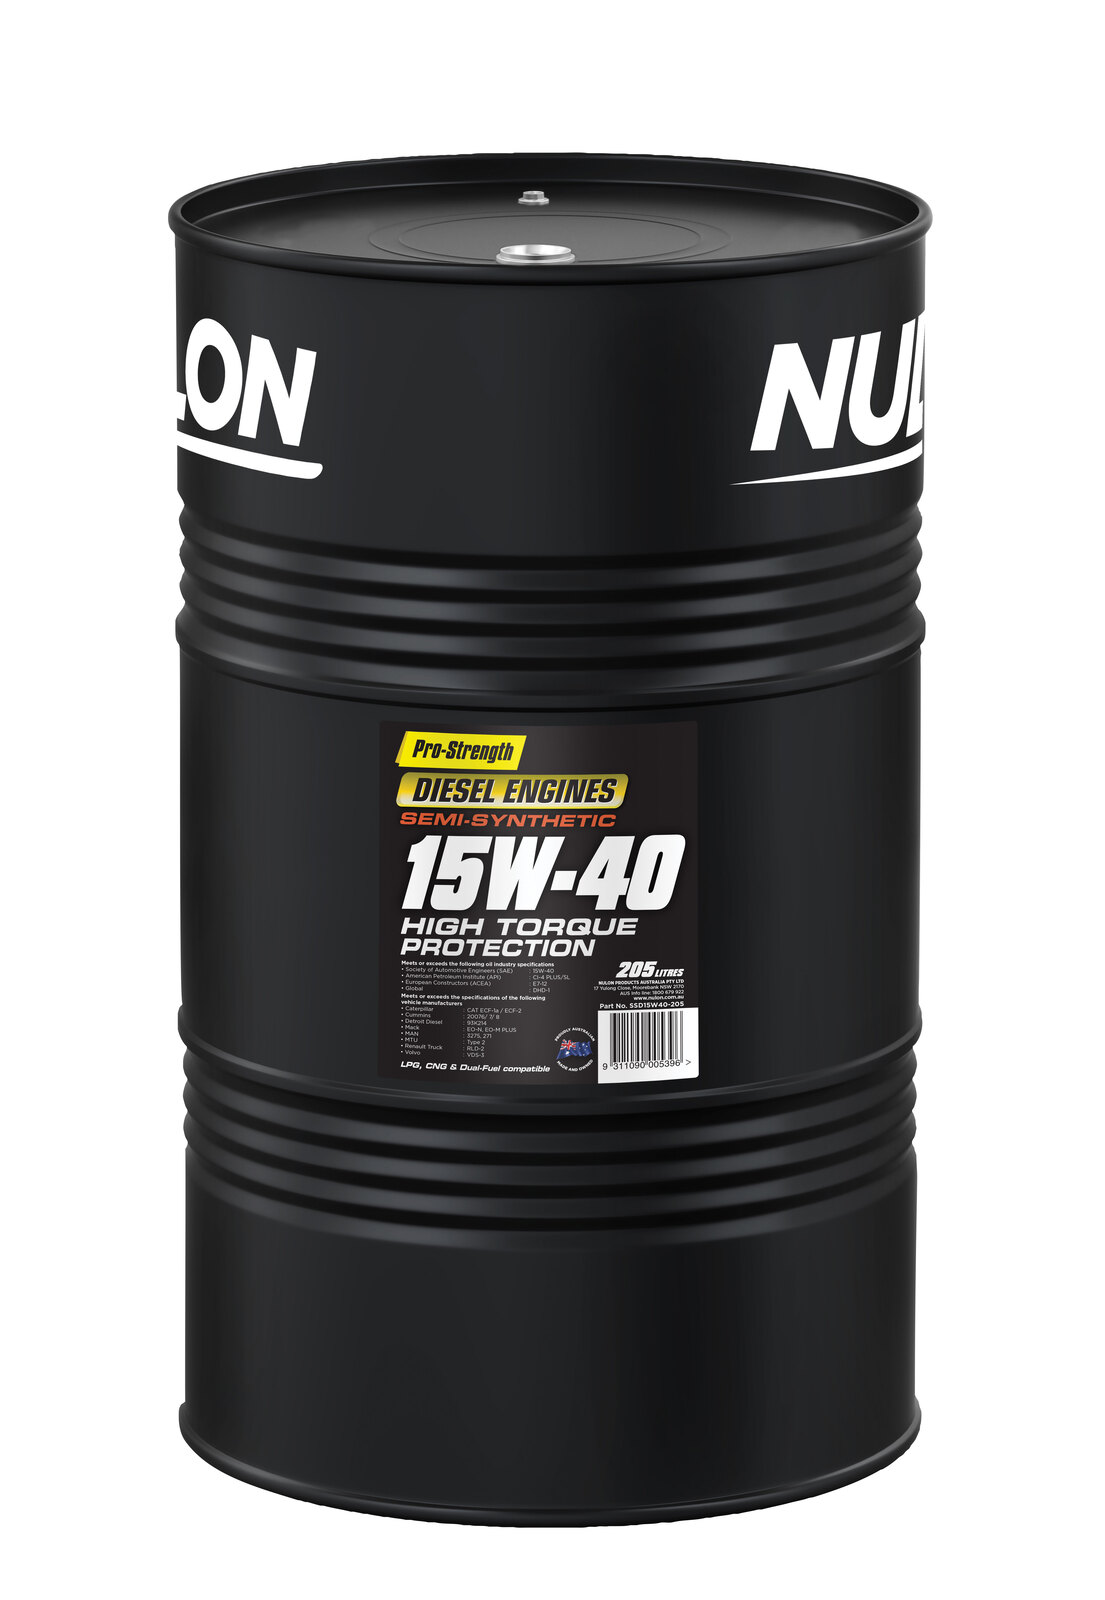 NULON High Torque Diesel Engine Oil 205L Drum, Each